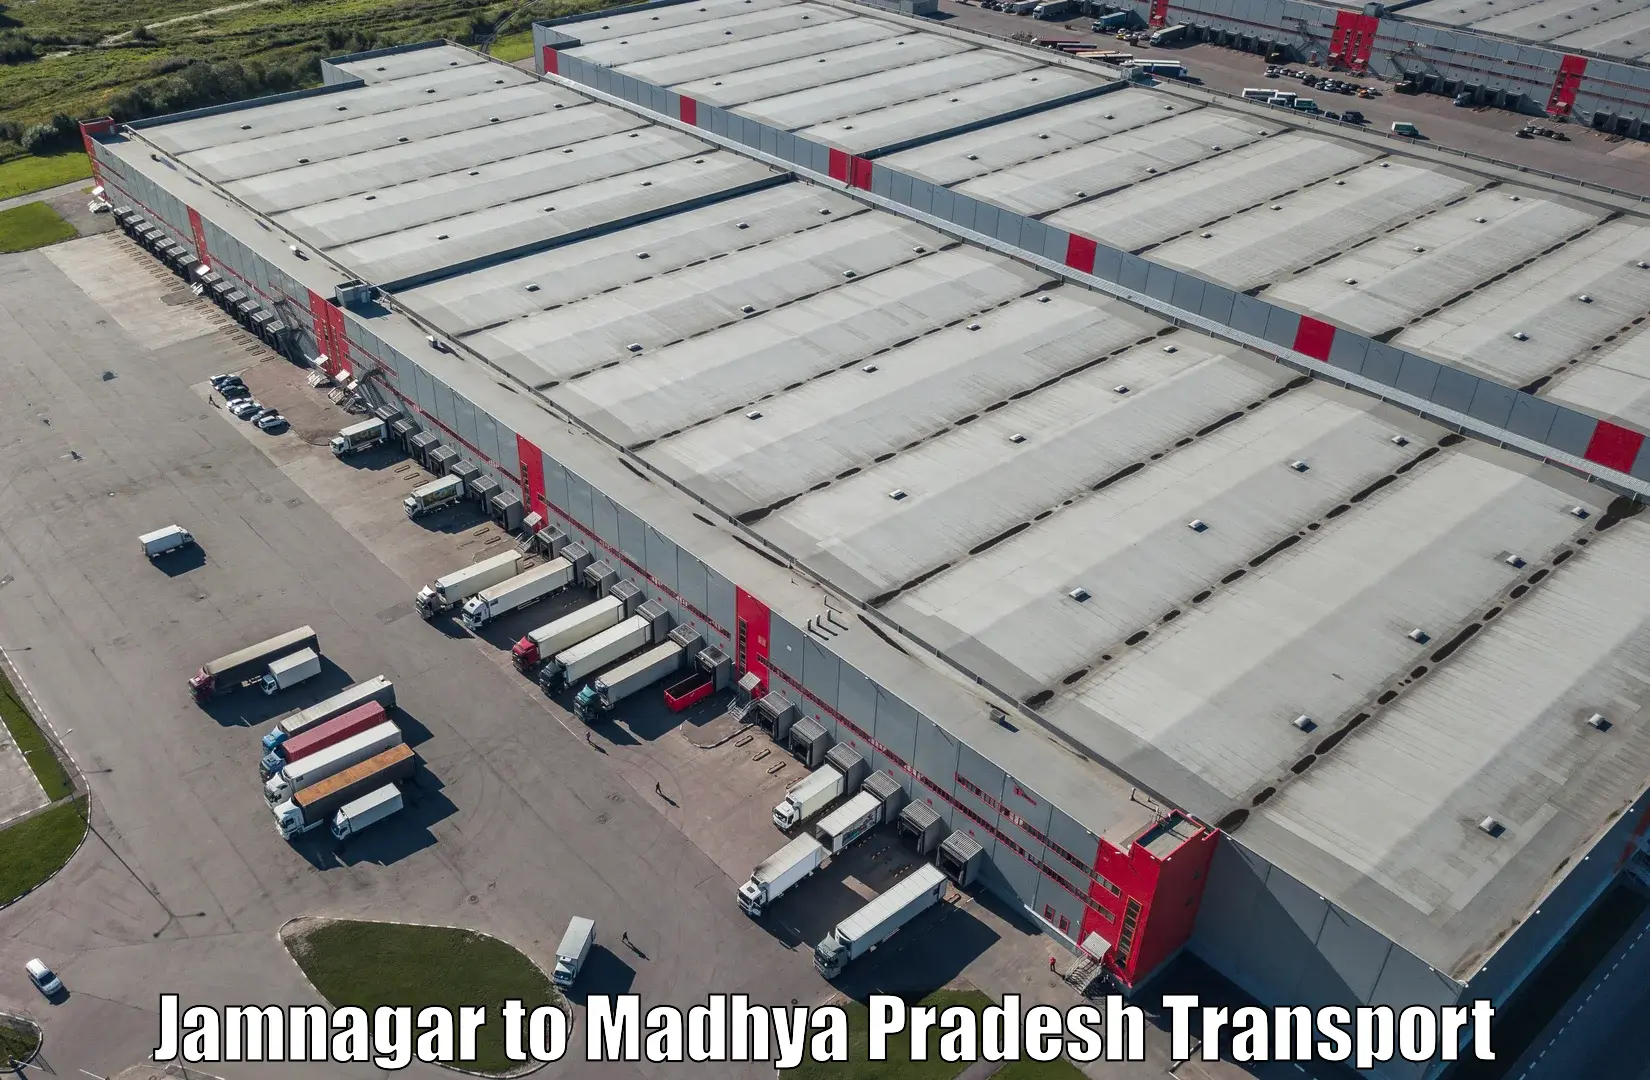 Road transport online services Jamnagar to Nalkheda